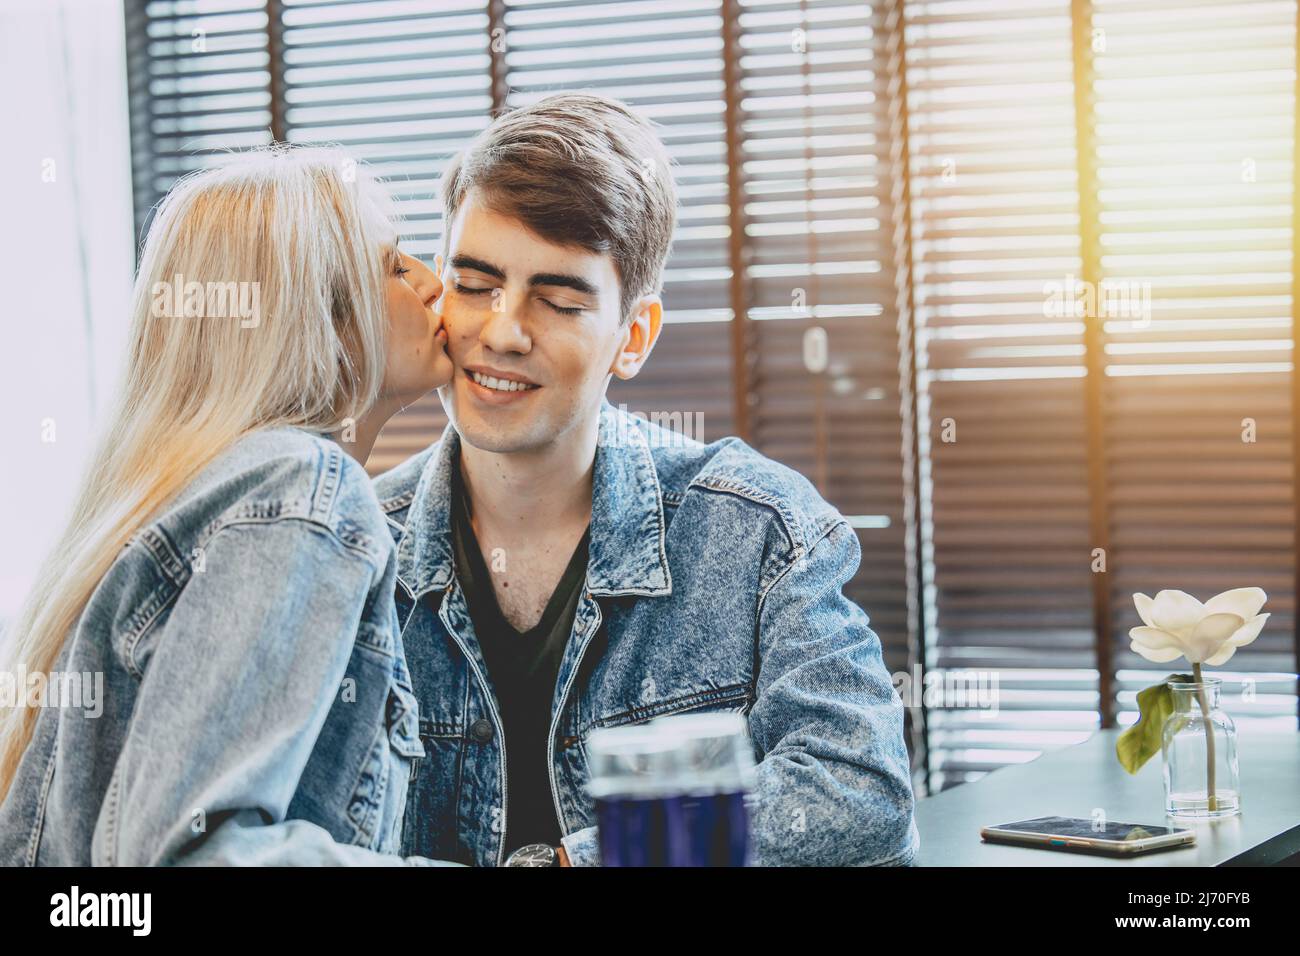 jeune couple amoureux embrassant ensemble, cheek baiser amour expression dans l'espace public. Banque D'Images